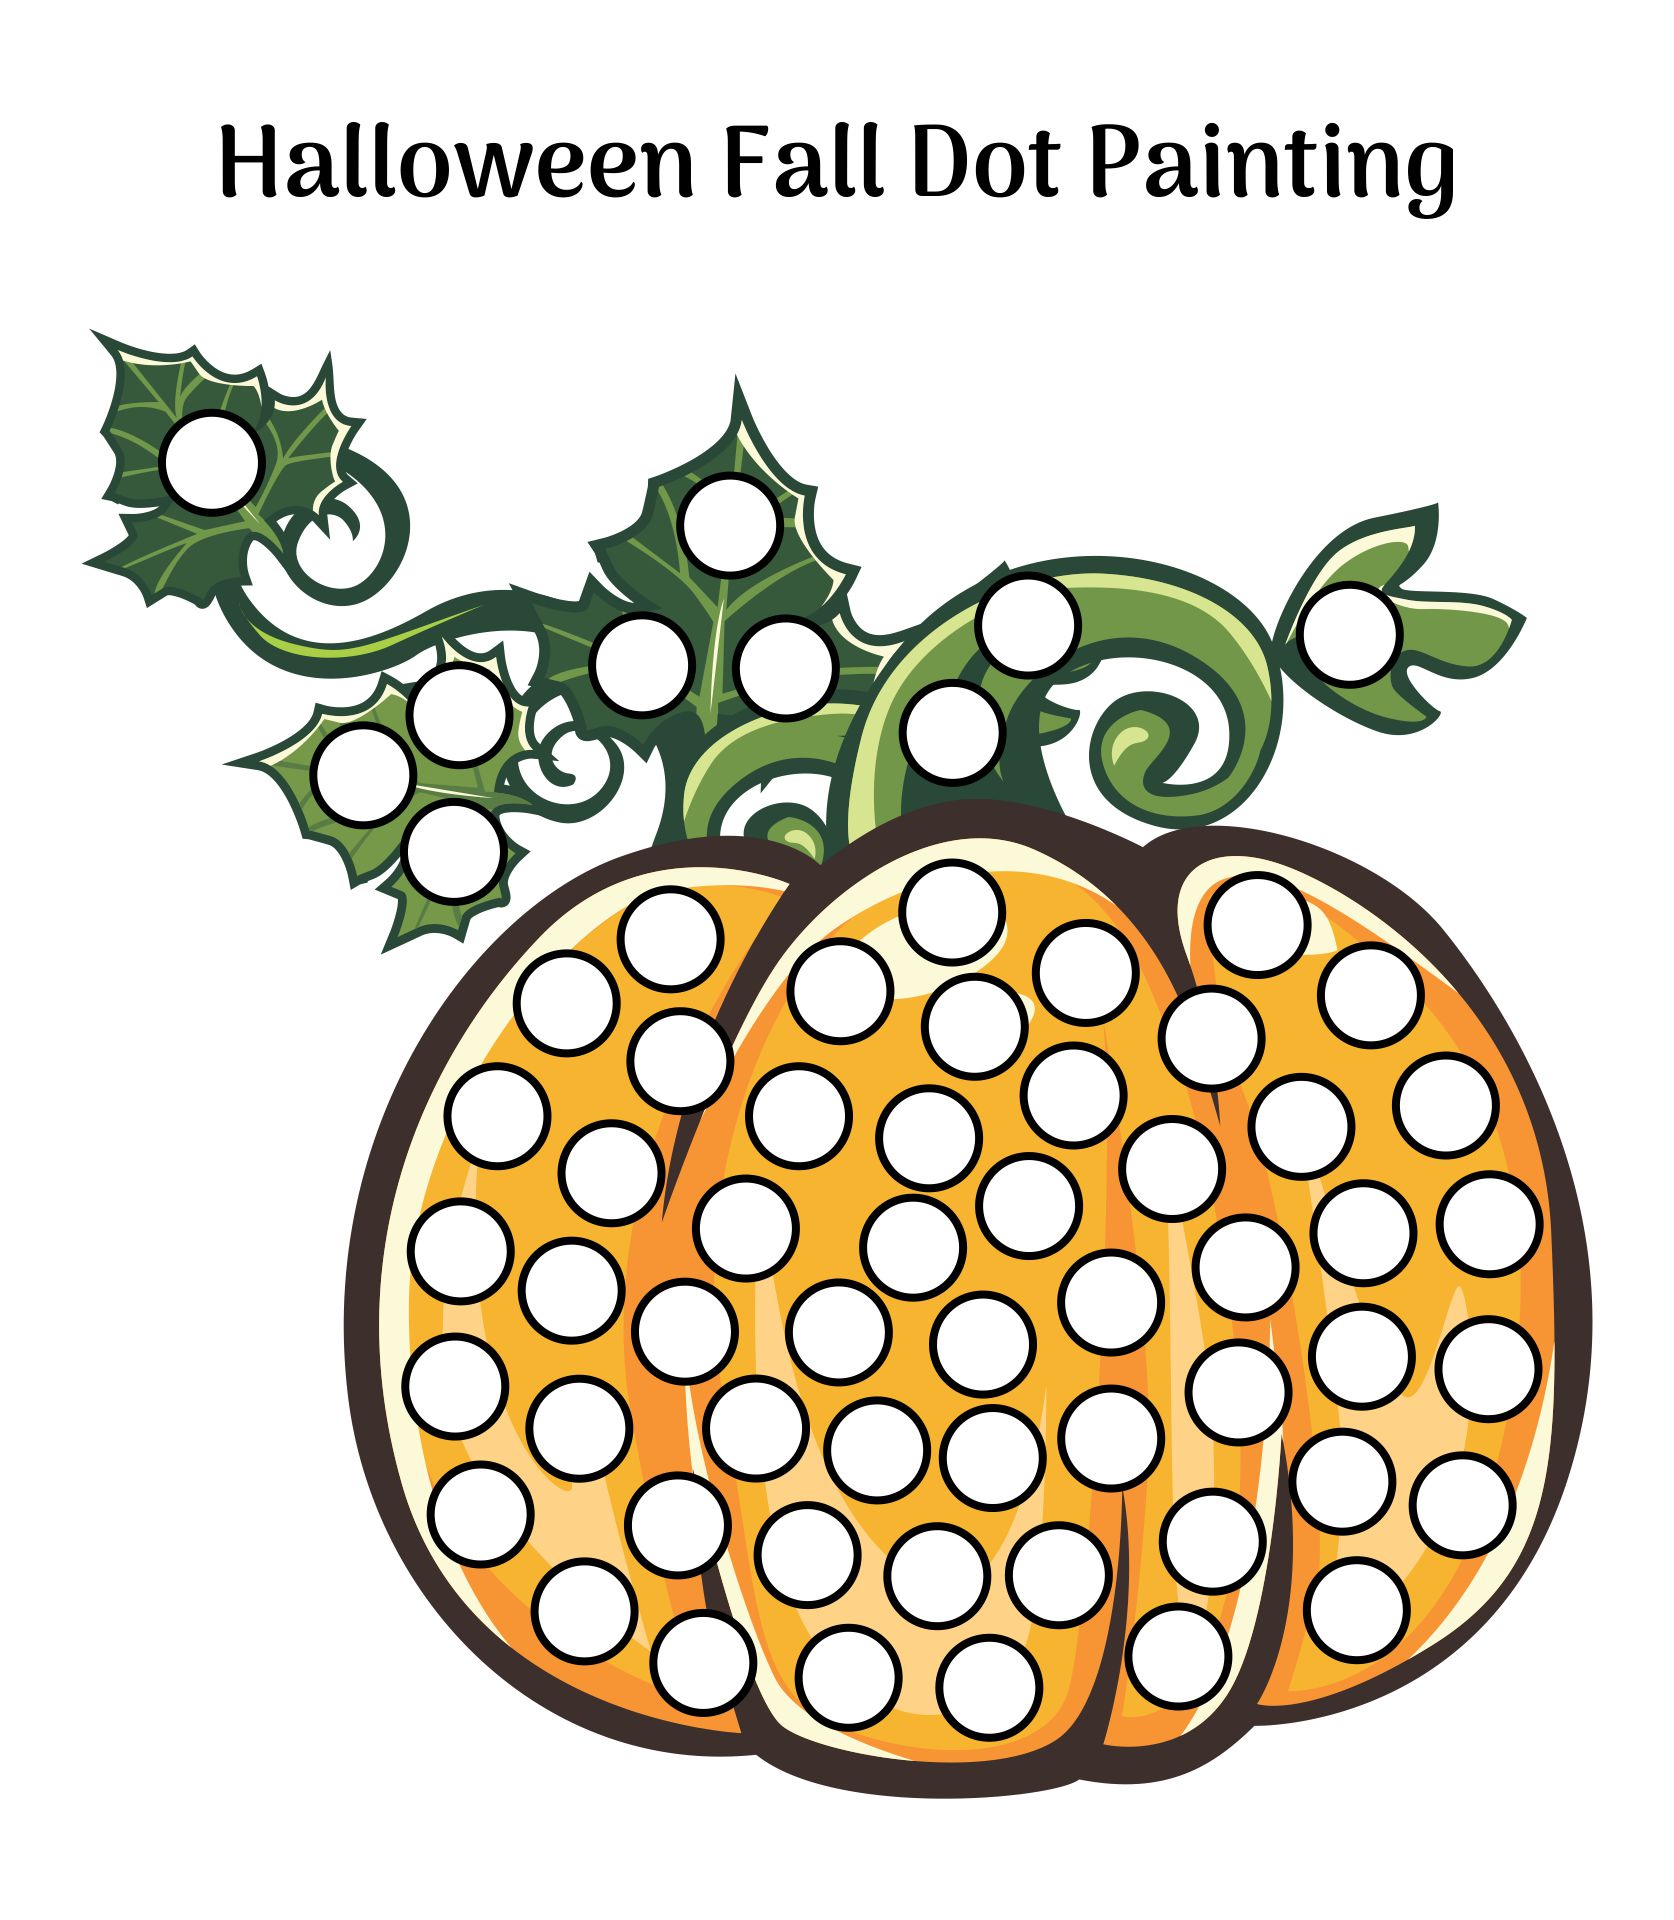 Halloween Fall Dot Painting Printable